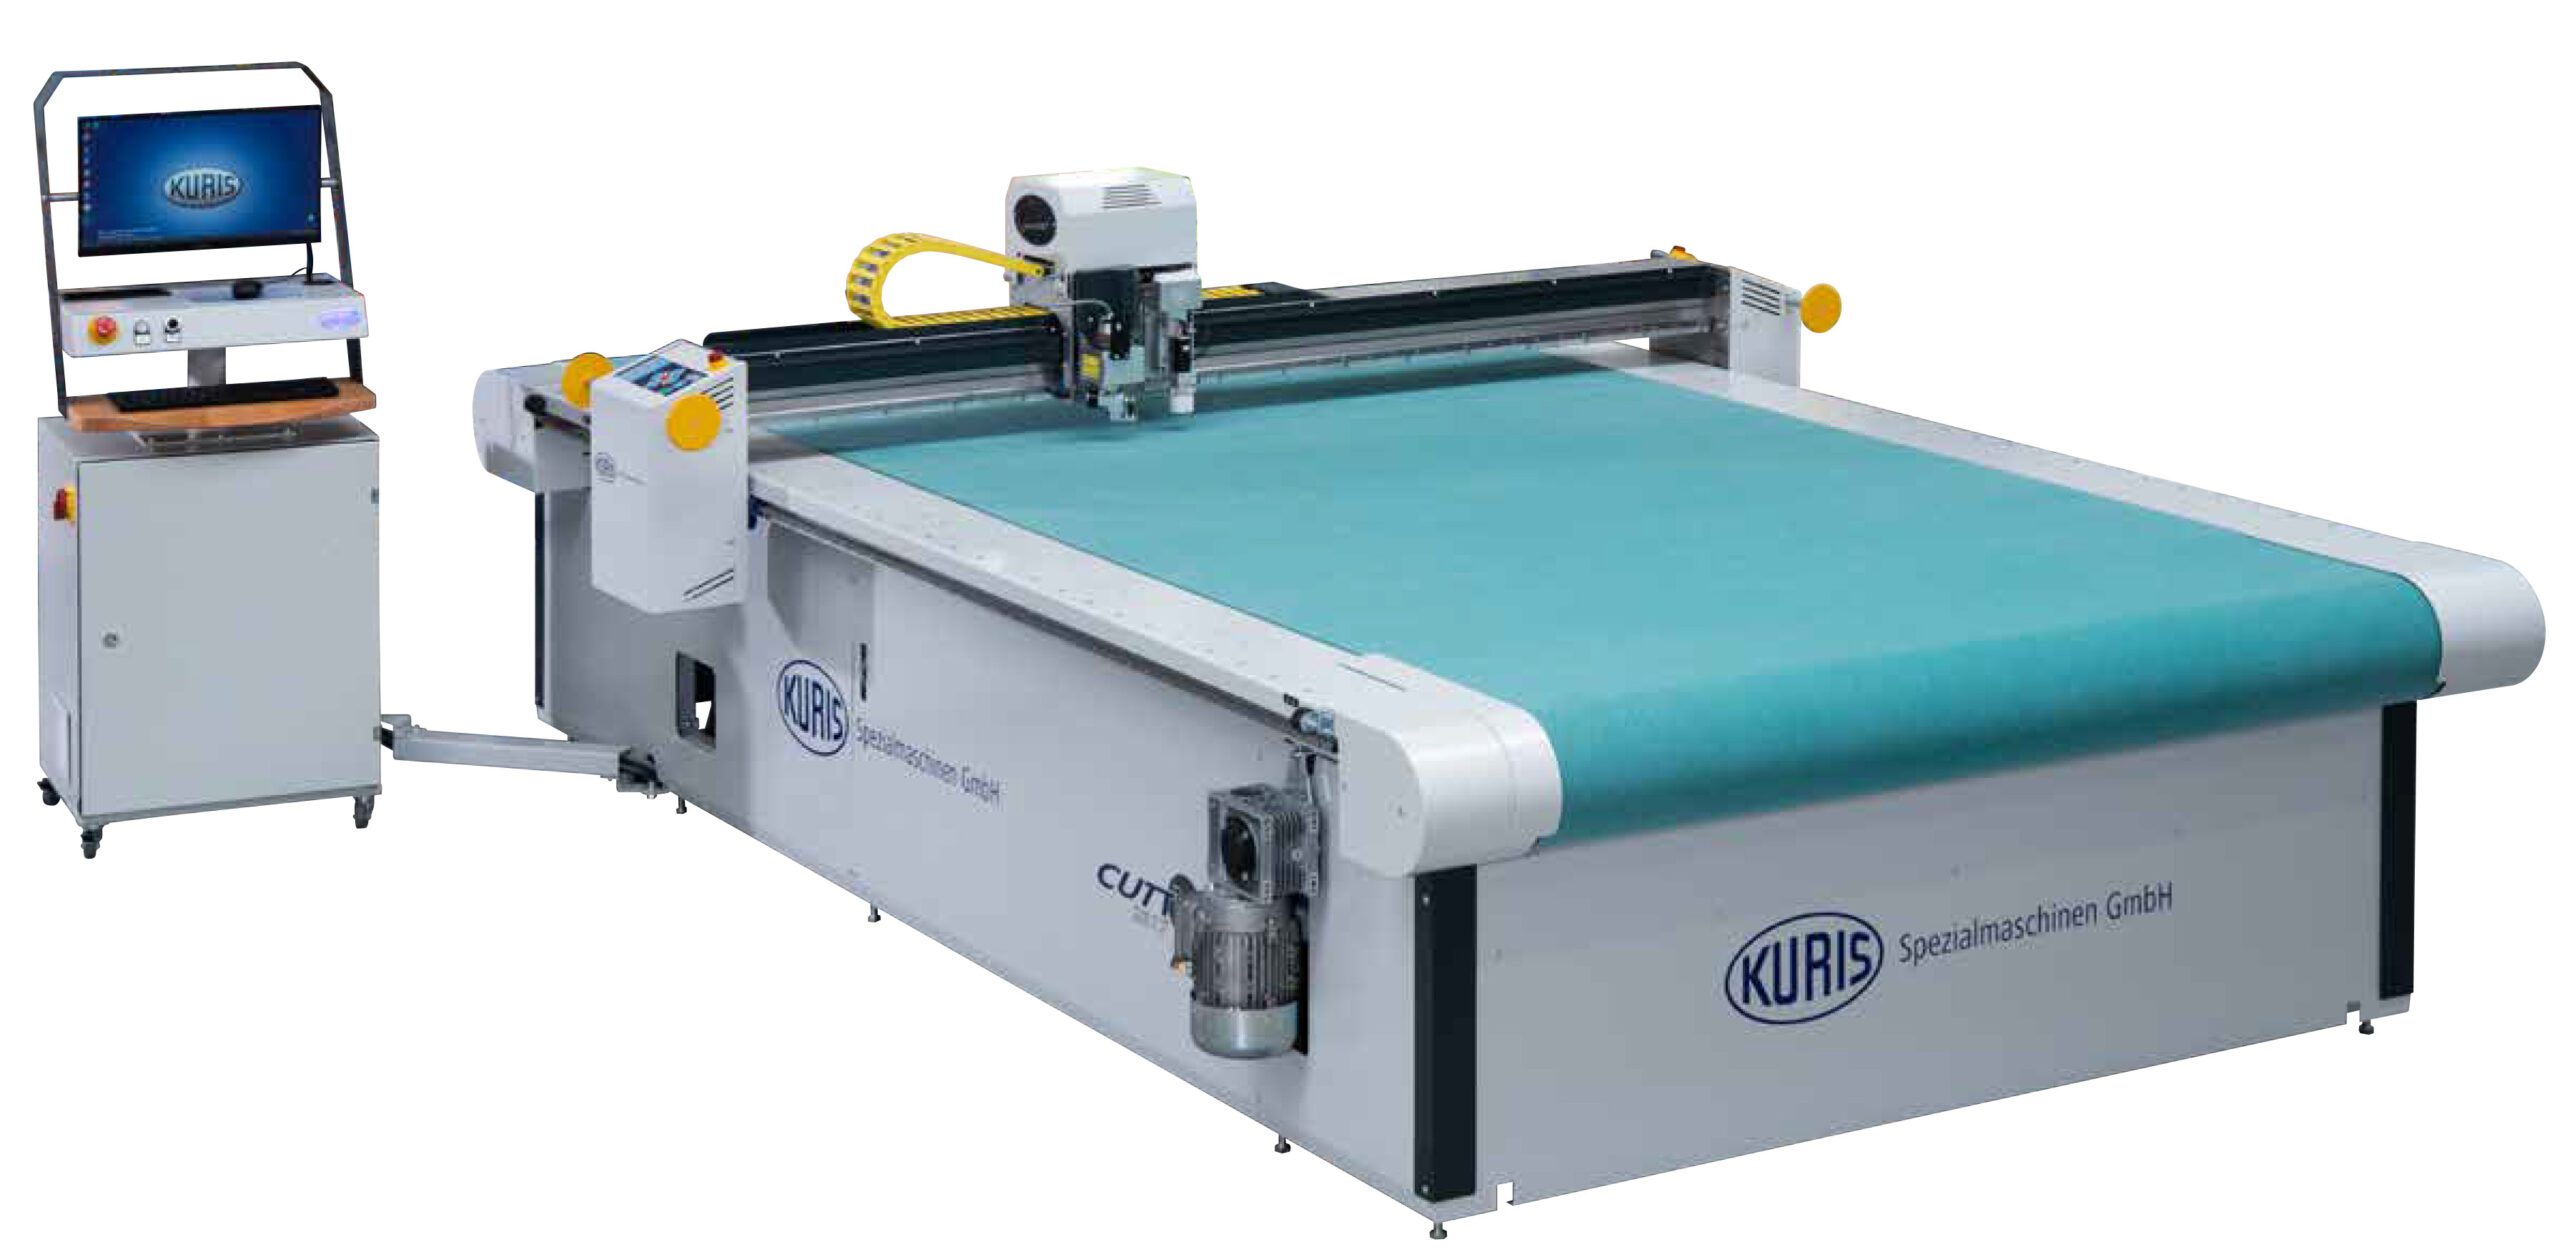 Kuris Cutty Single Ply CNC Fabric Cutting Machine